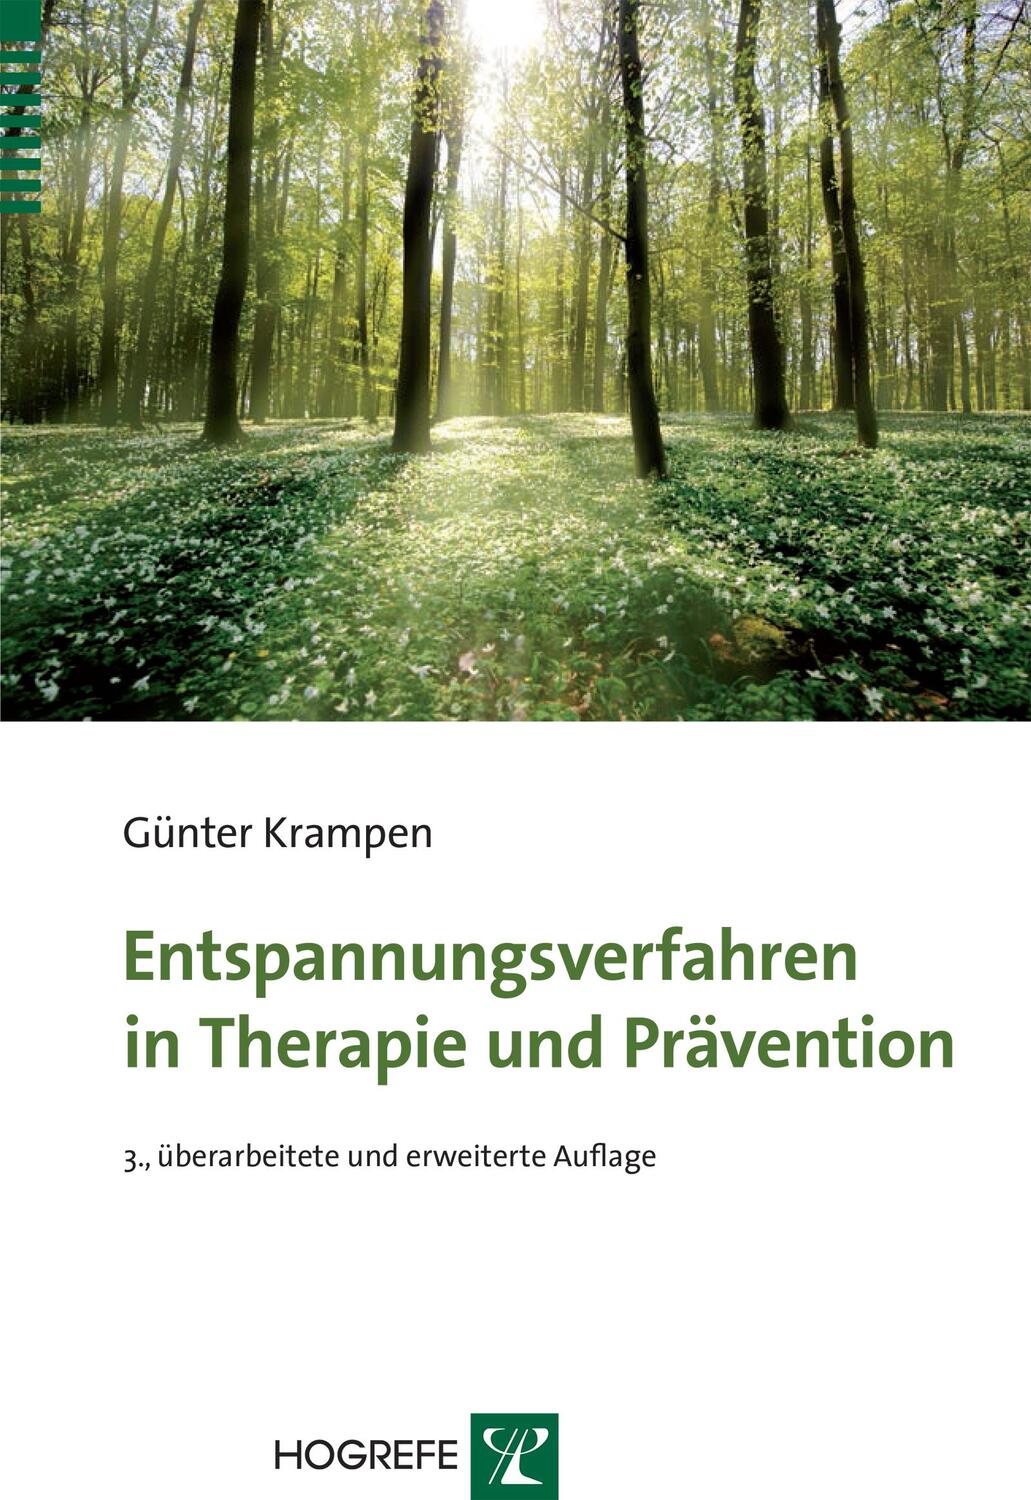 Entspannungsverfahren in Therapie und Prävention - Krampen, Günter